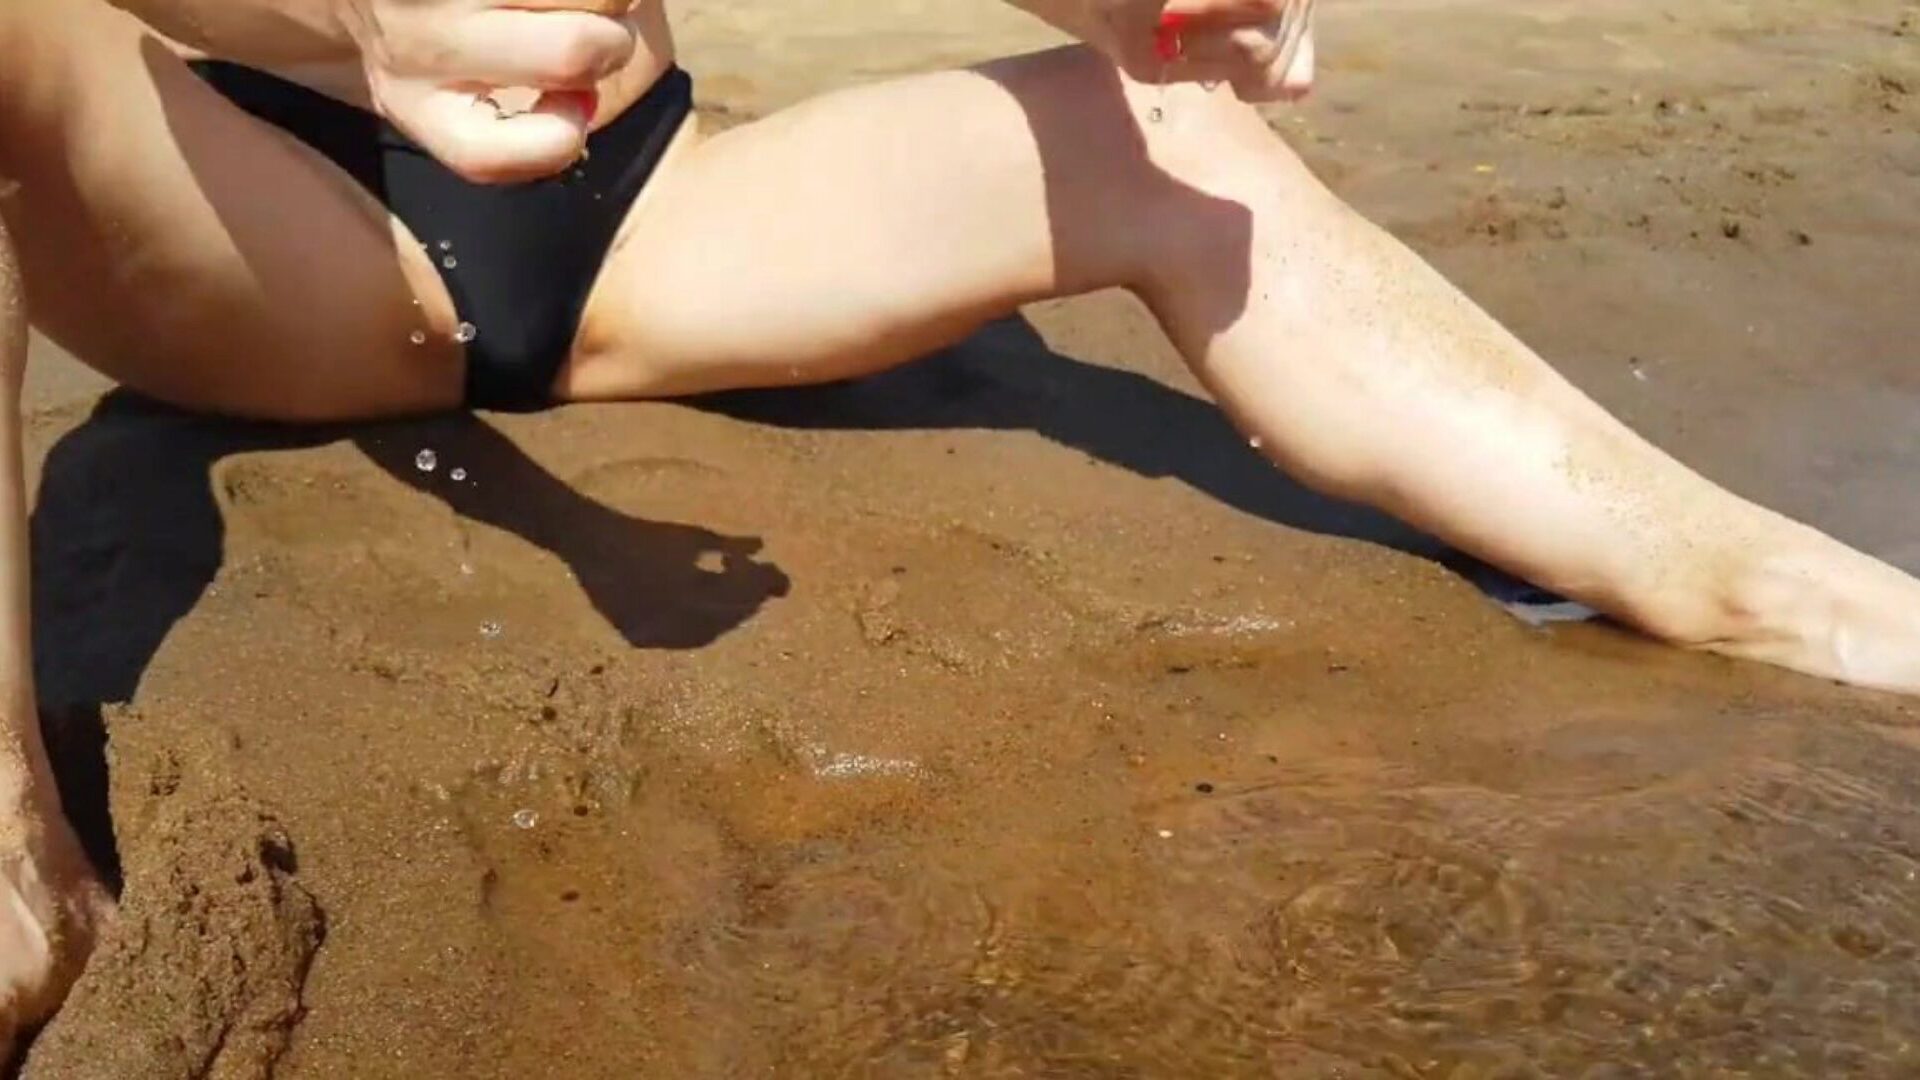 teen prstoklad na veřejné pláži a dostane skutečný skvělý orgasmus - těsná kočička playskitty ultra hd 4k